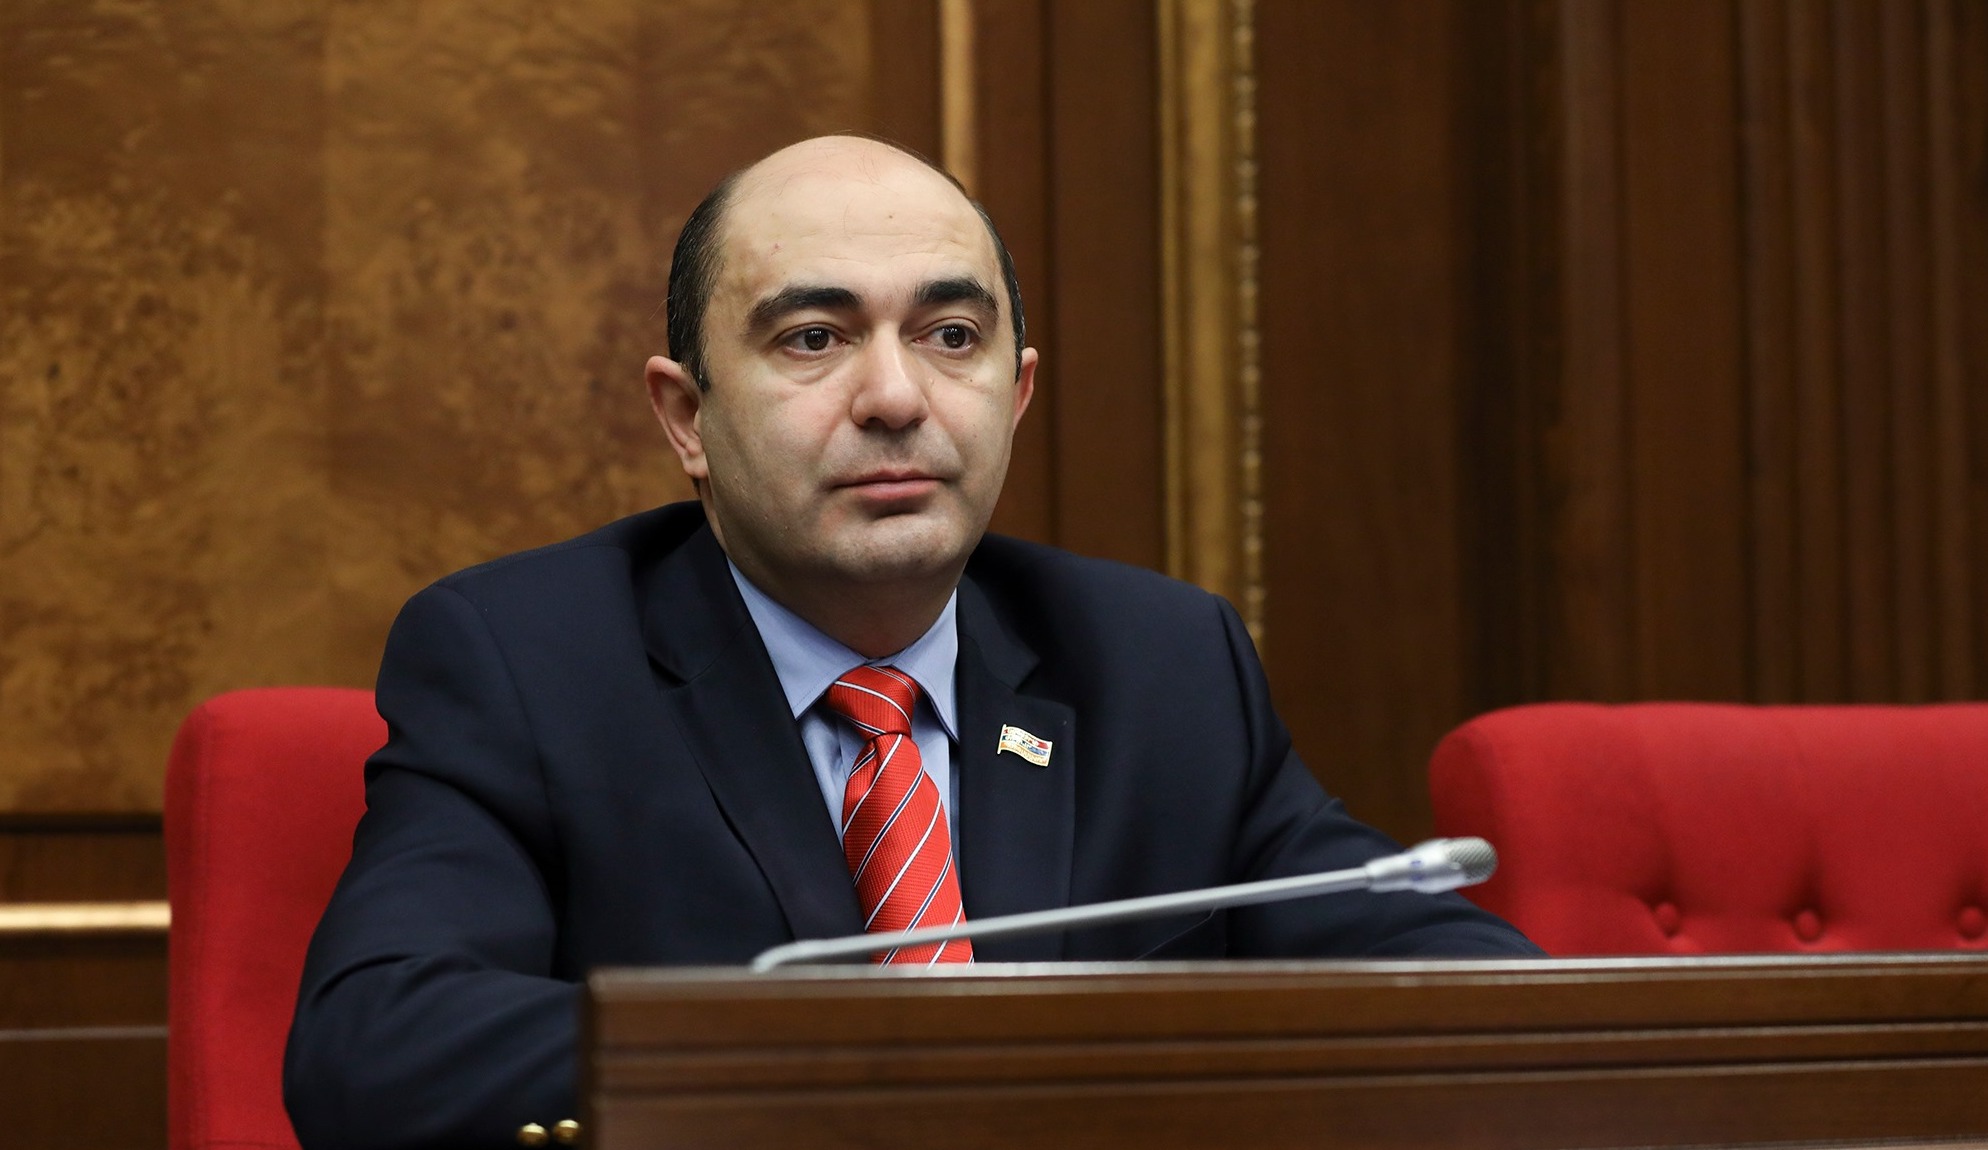 Ադրբեջանը Պրահայում պայմանավորվել է շարունակել հանդիպումները քառակողմ ձևաչափով. Մարուքյան